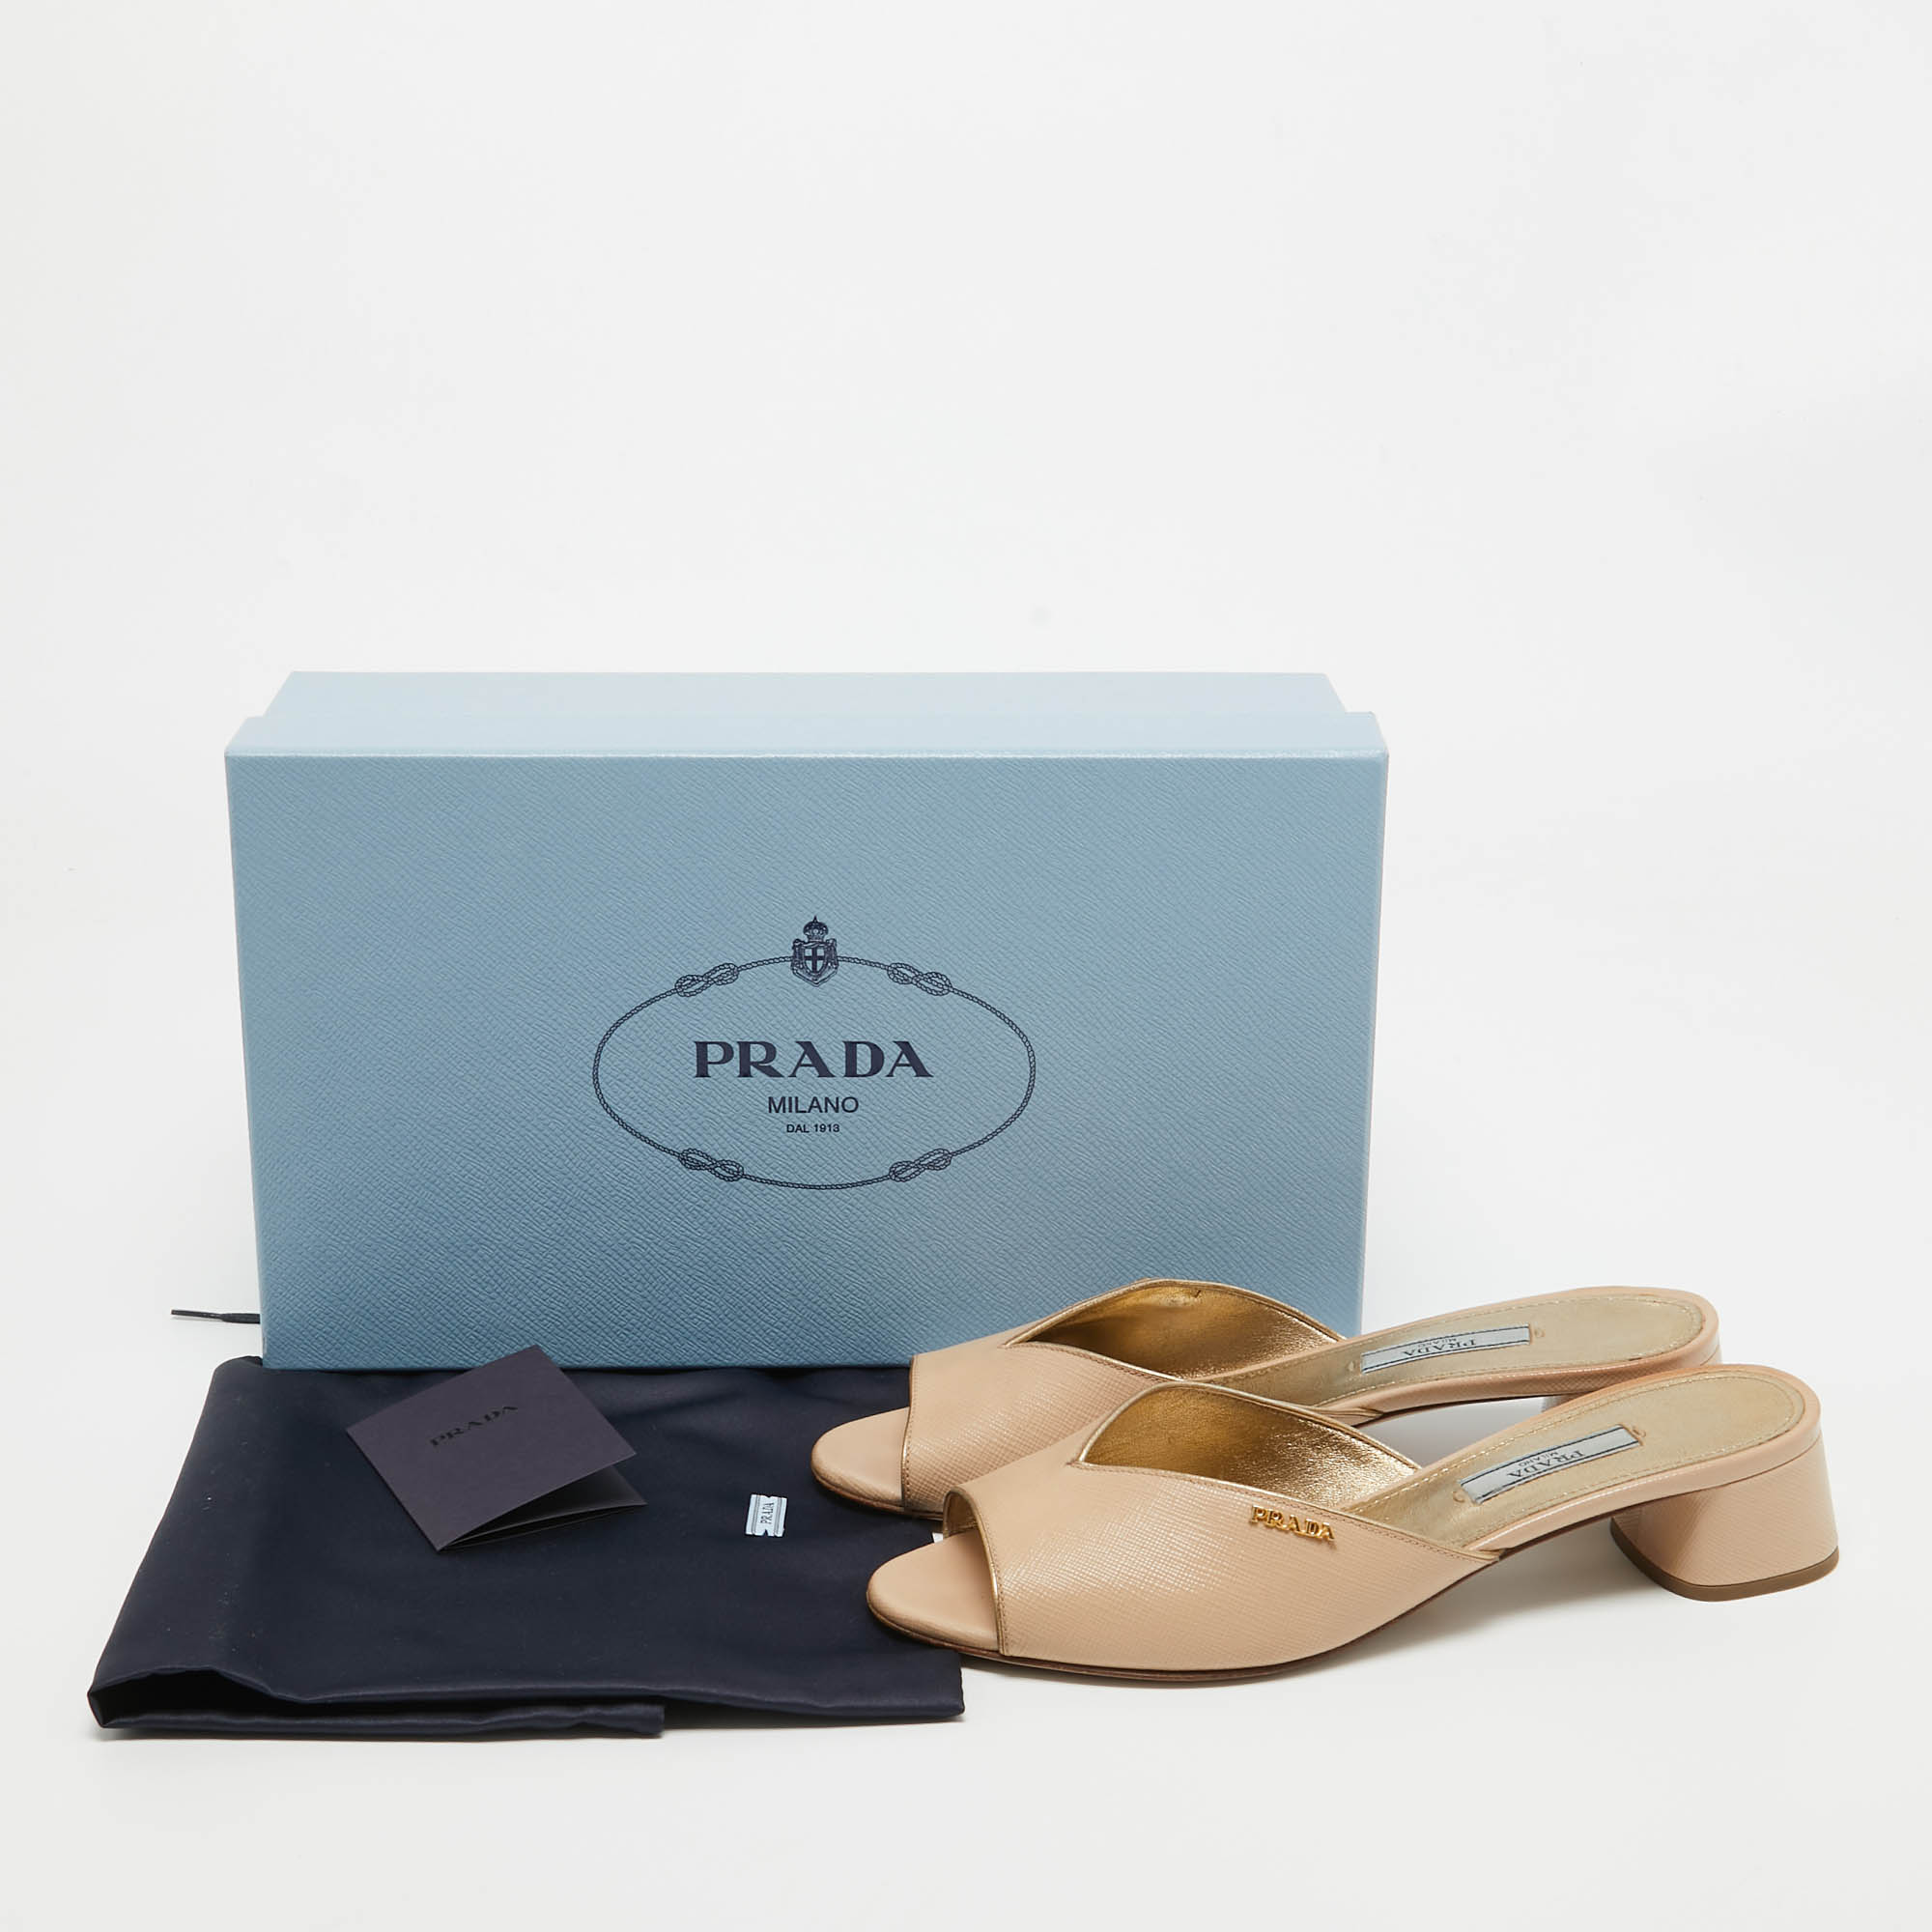 Prada Beige Patent Leather Open Toe Block Heel Slide Sandals Size 37